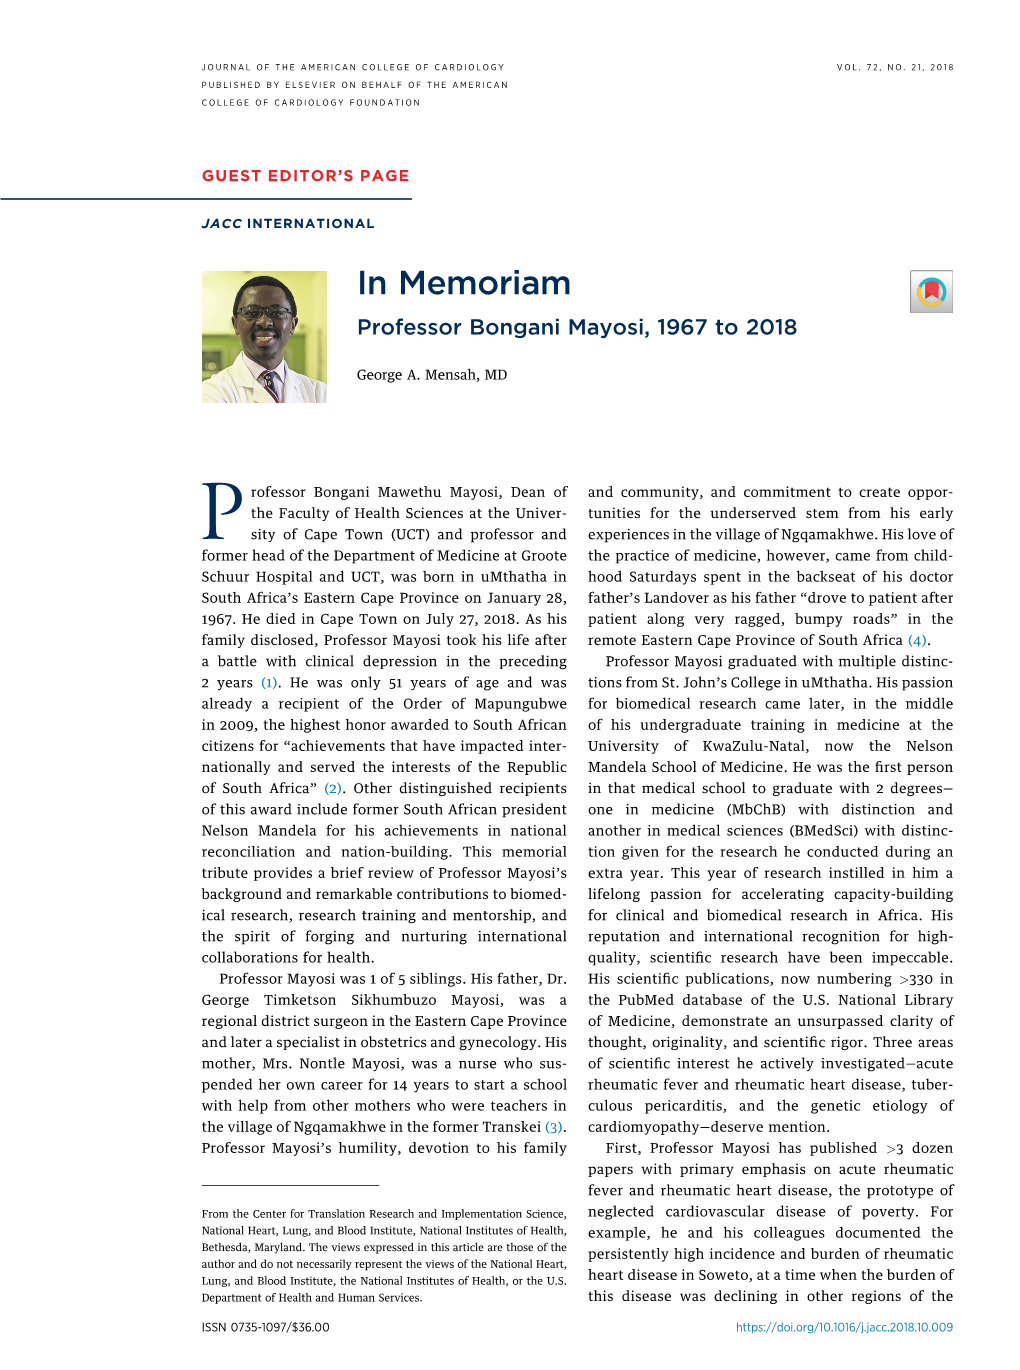 In Memoriam Professor Bongani Mayosi, 1967 to 2018